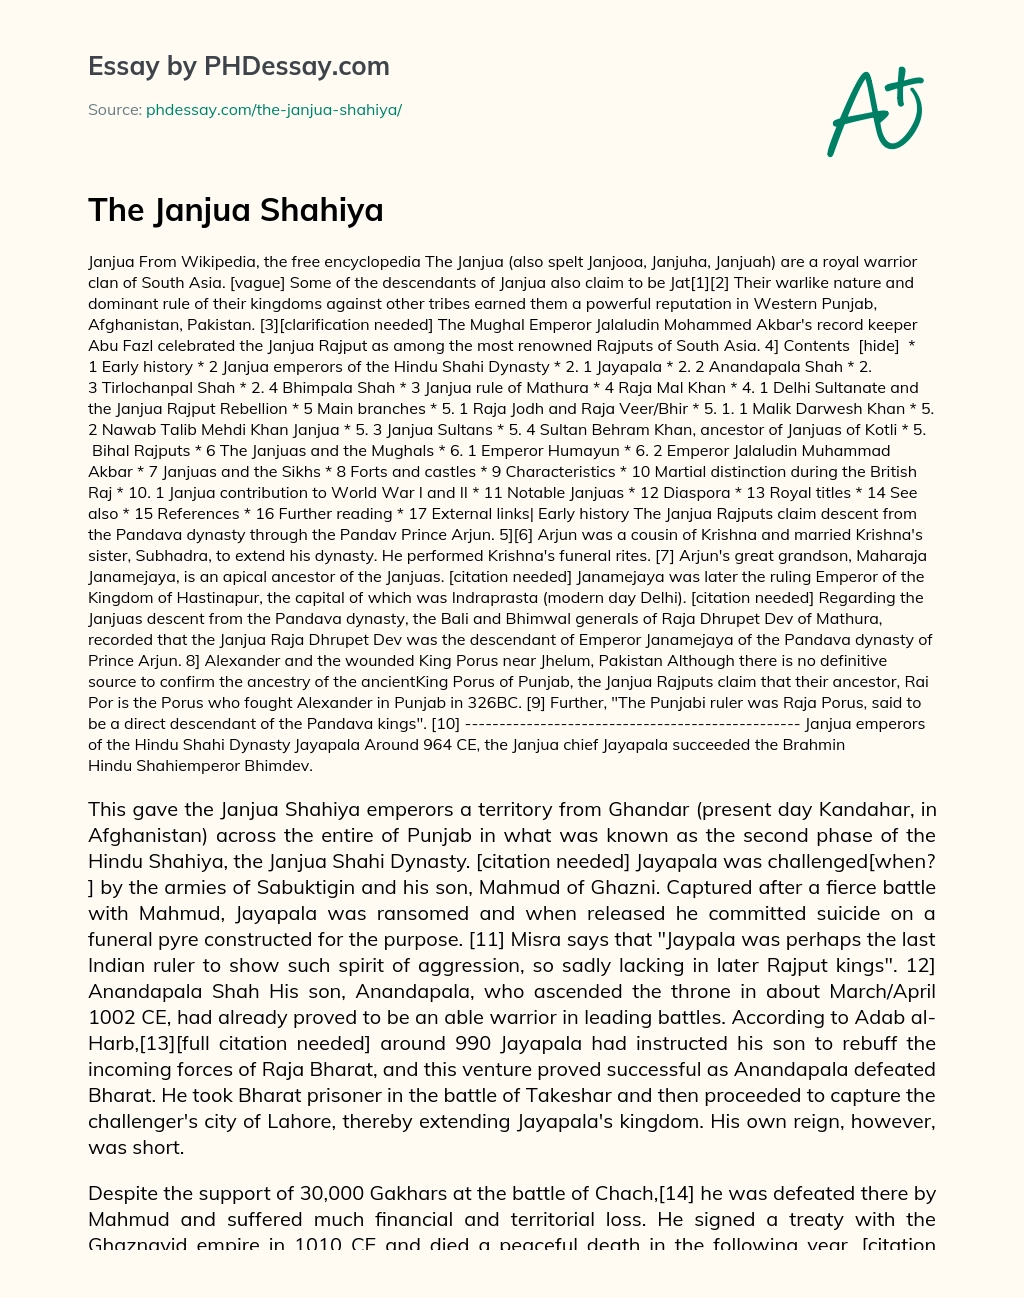 The Janjua Shahiya essay